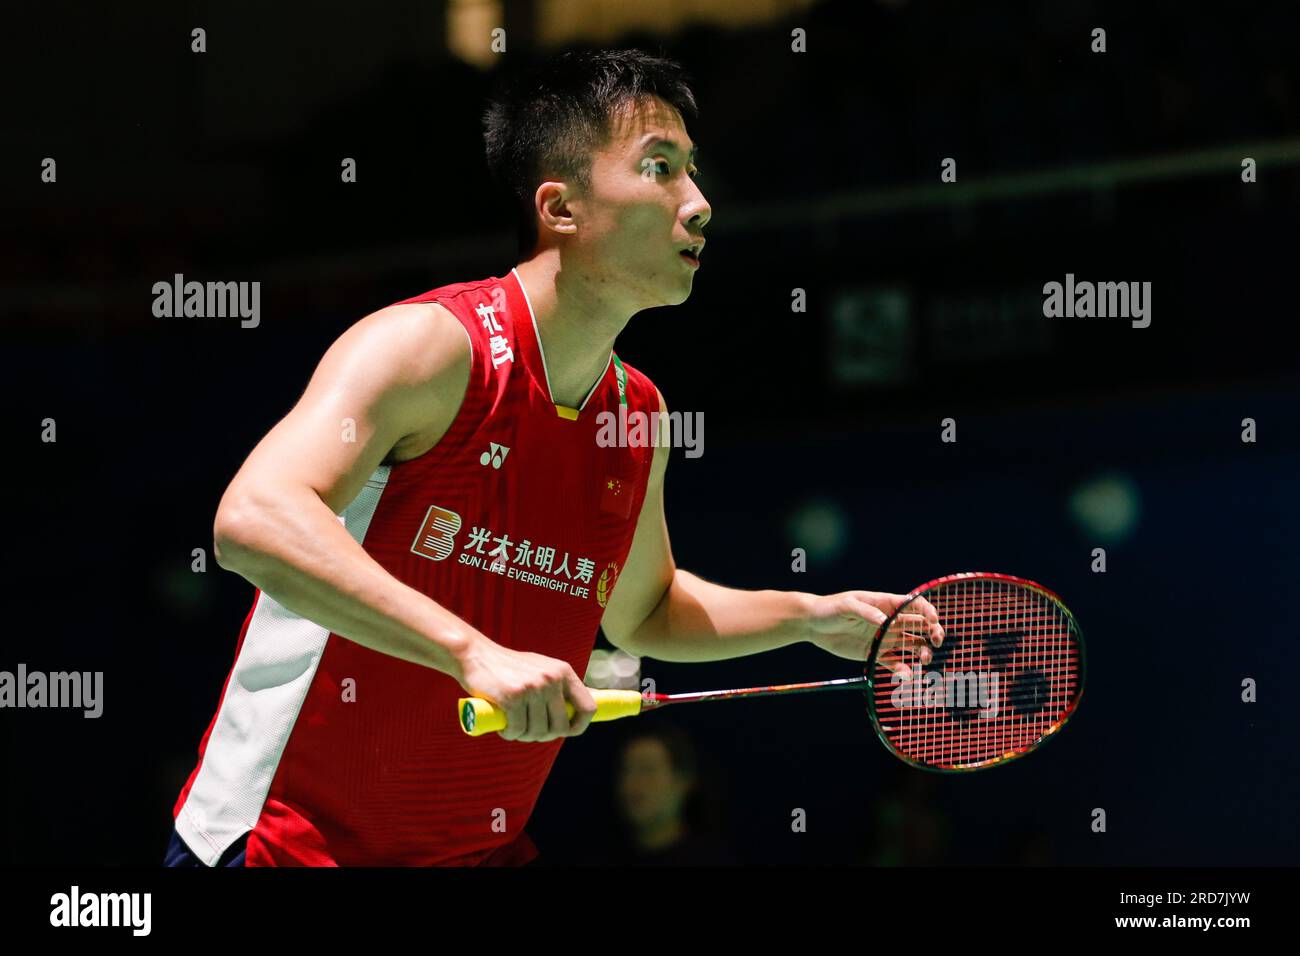 (230719) -- YEOSU, 19 juillet 2023 (Xinhua) -- lu Guangzu, de Chine, concourt au match de premier tour masculin en simple contre Kanta Tsuneyama, du Japon, au BWF Korea Badminton Championships 2023 à Yeosu, Corée du Sud, le 19 juillet 2023. Banque D'Images